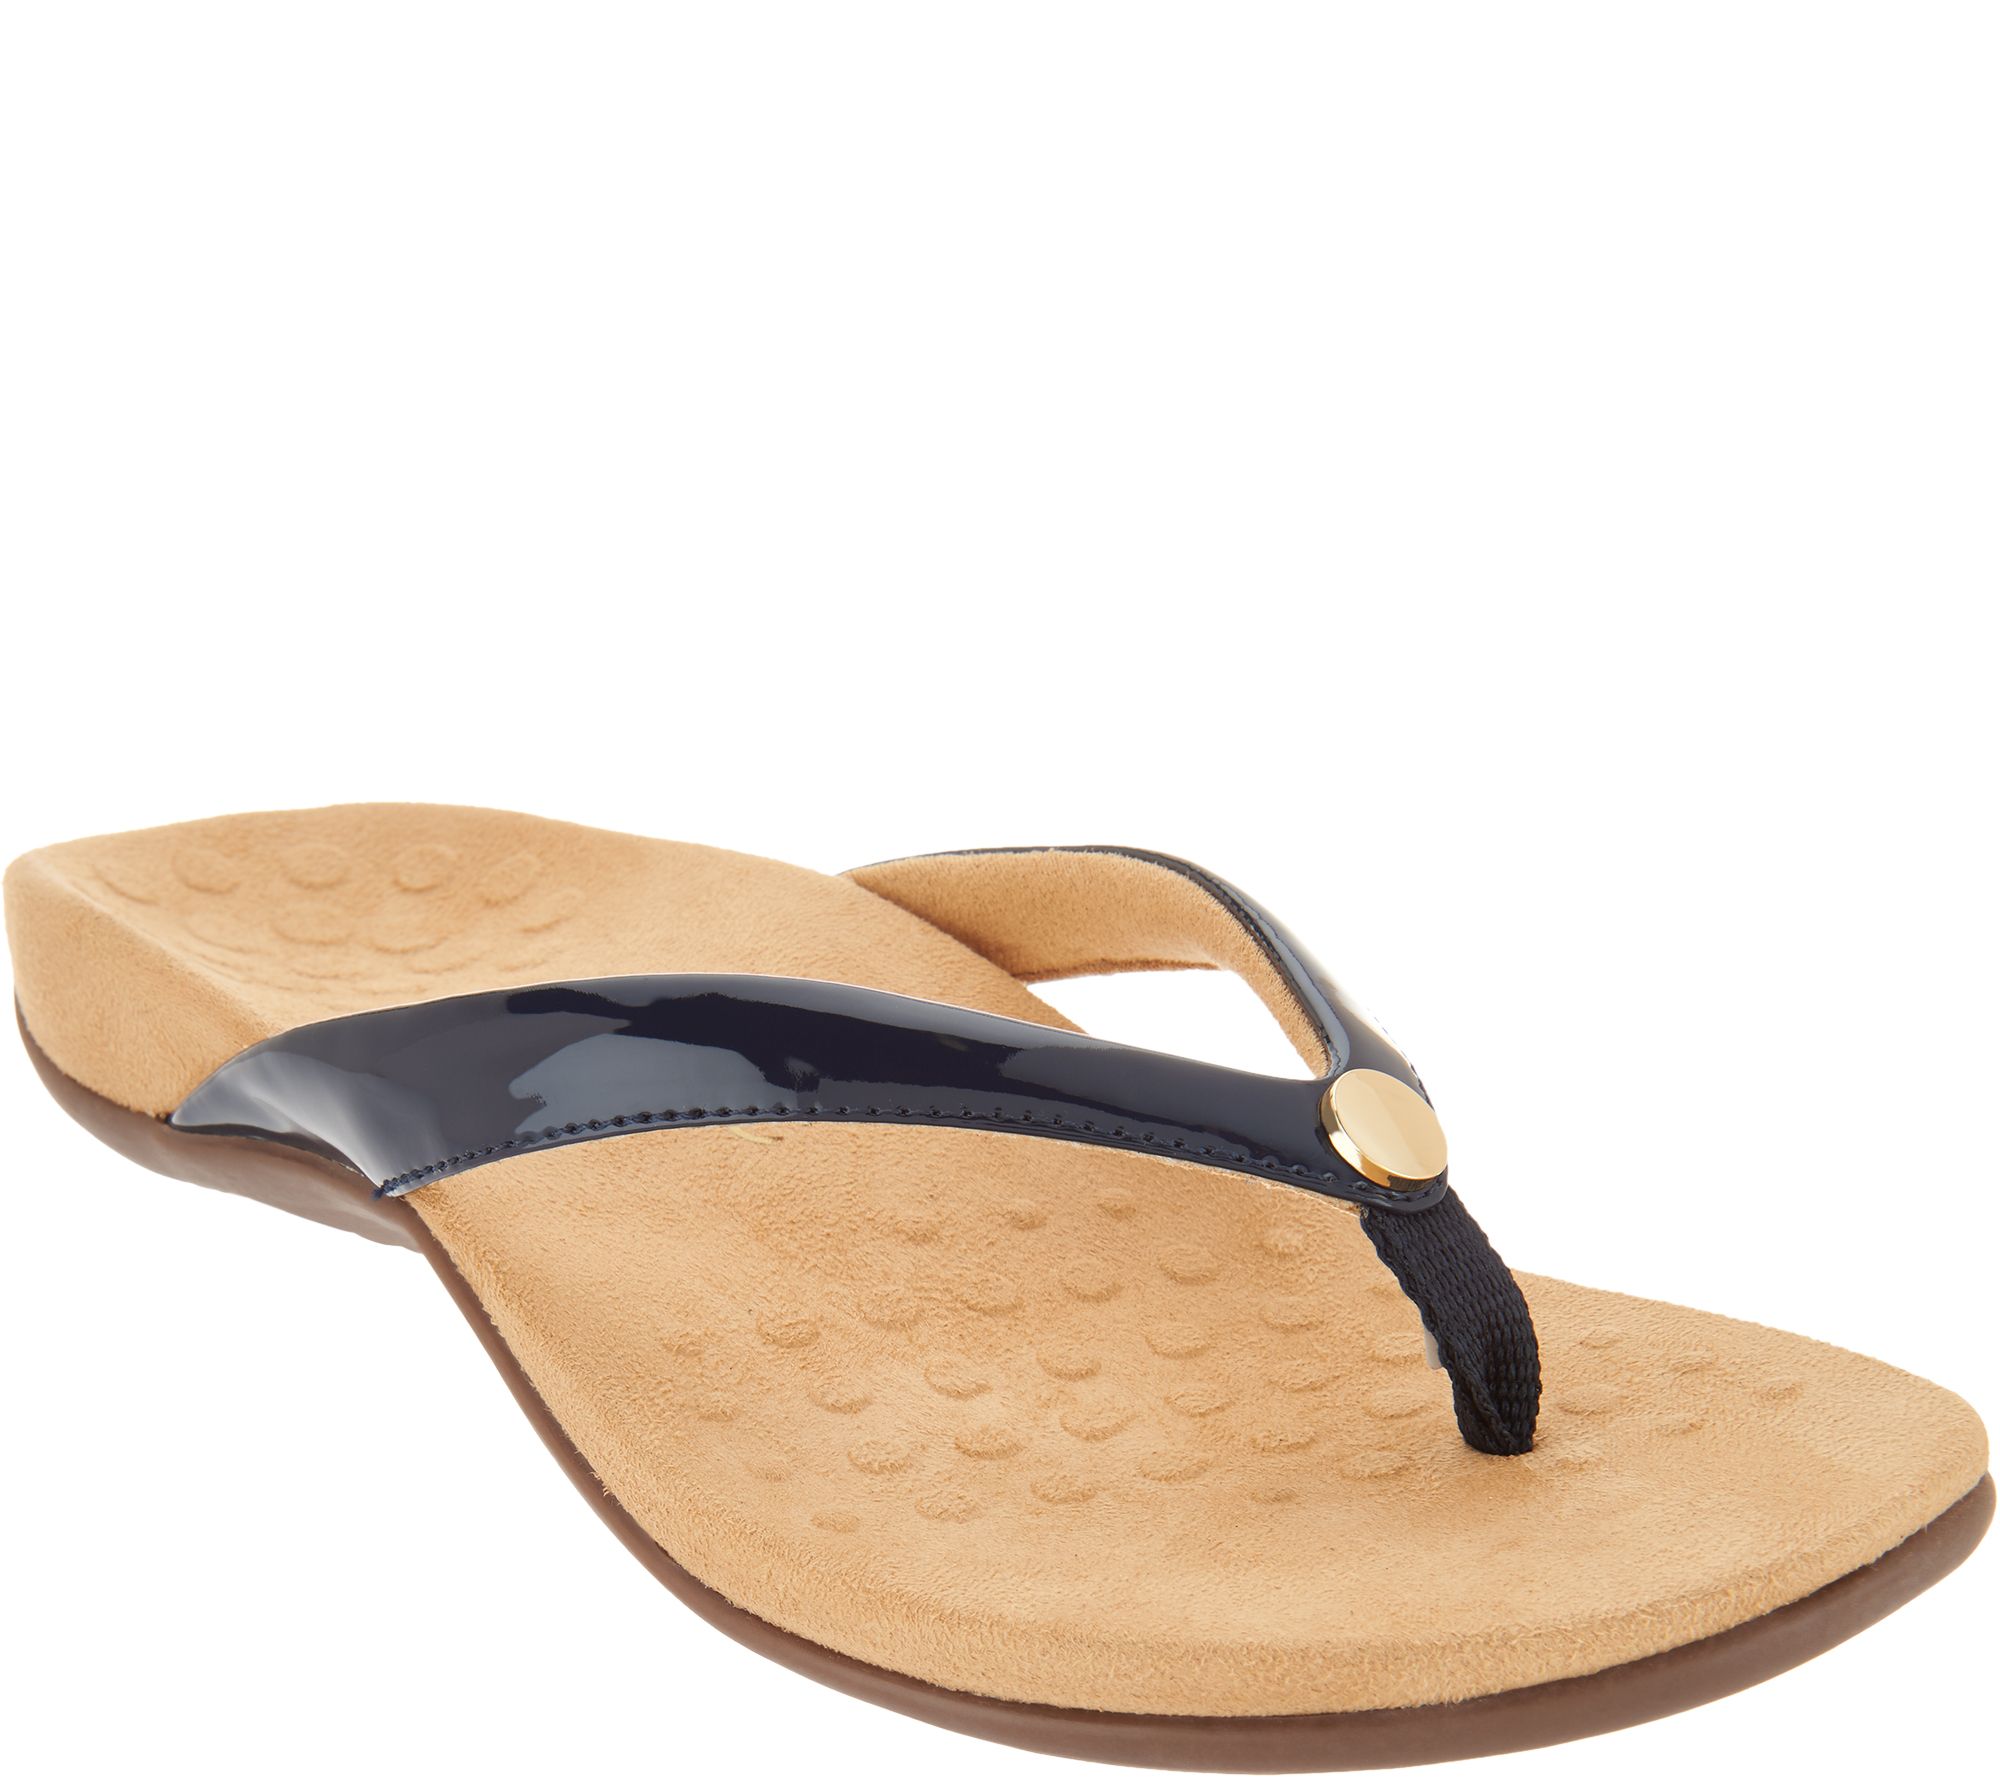 vionic thong sandals